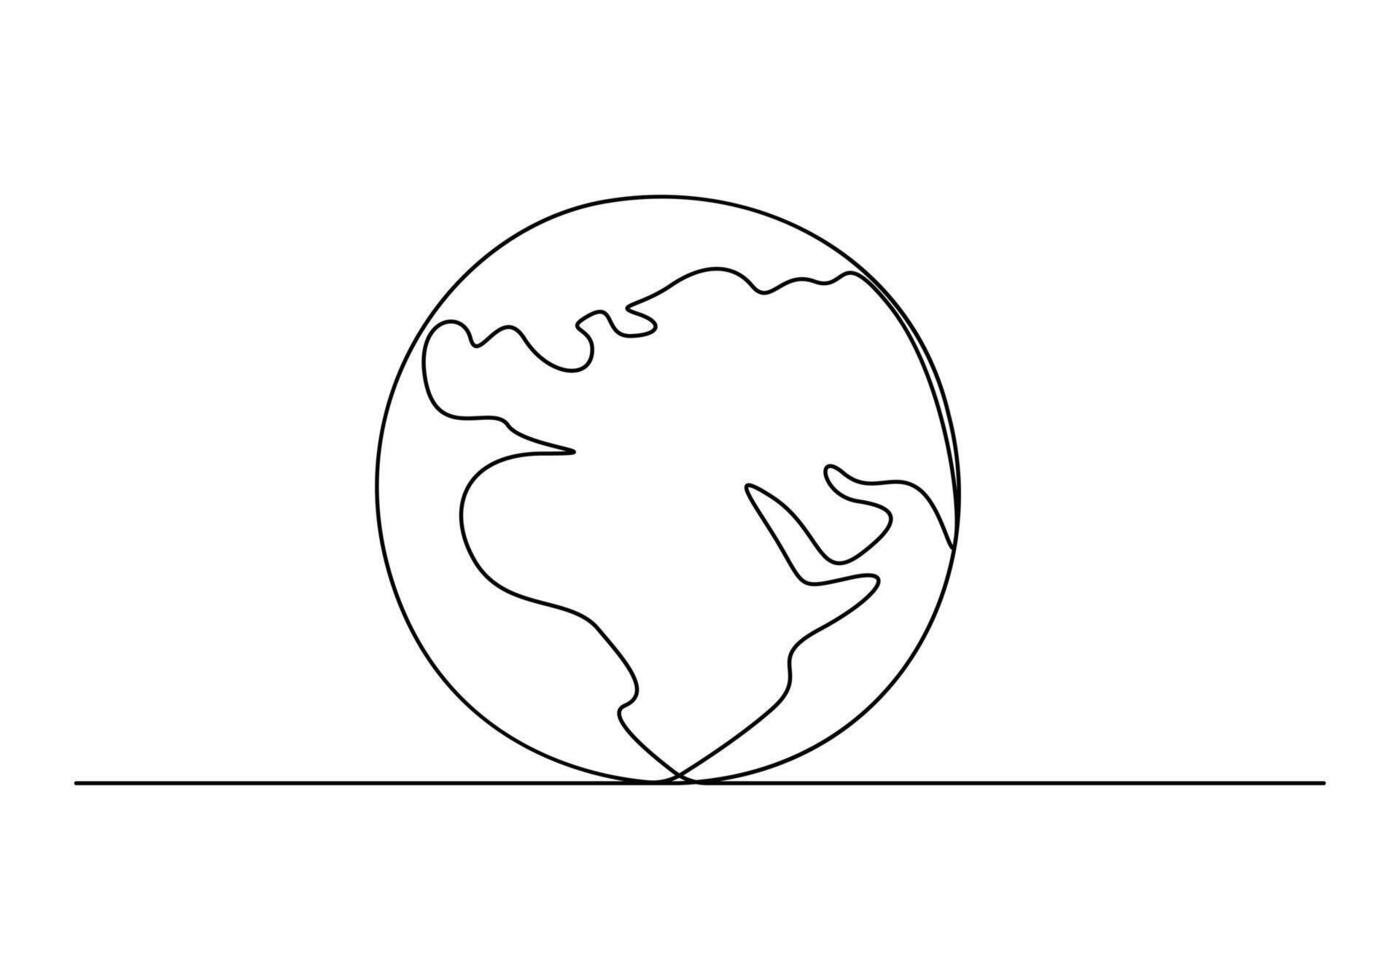 Terre globe continu un ligne dessin vecteur illustration. pro vecteur